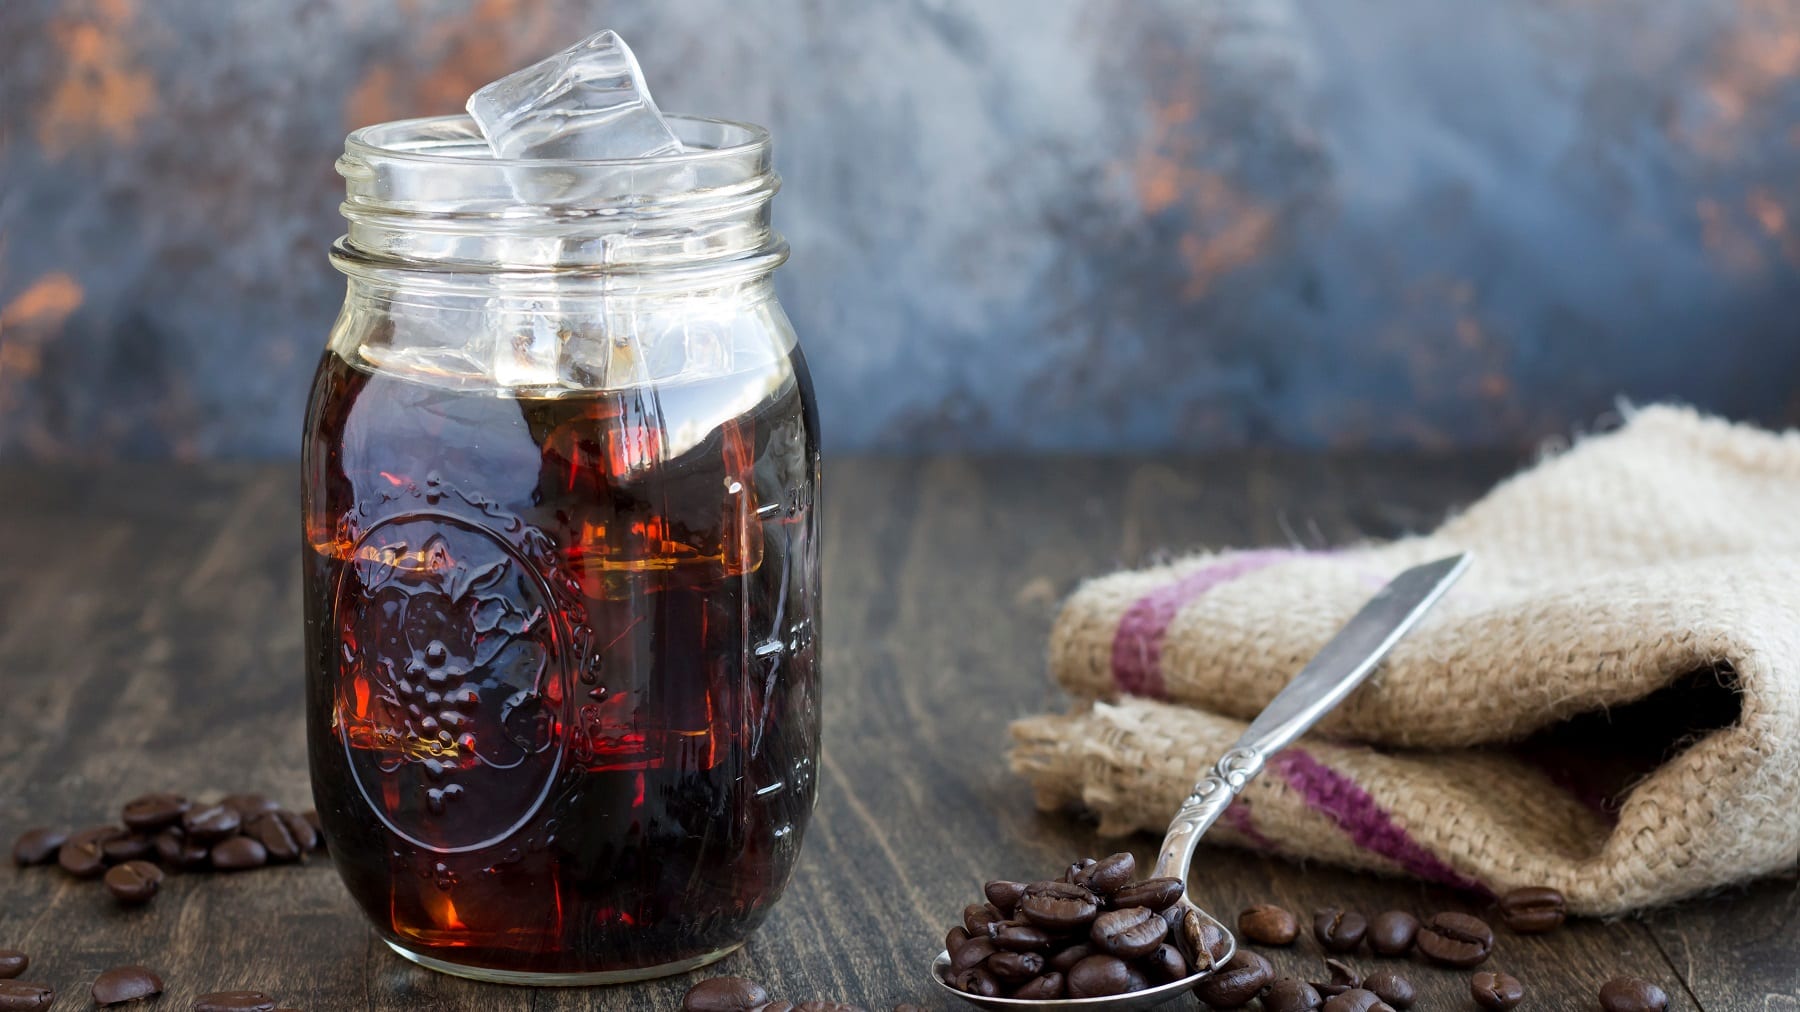 Ein Glas Cold Brew Coffee mit Eiswürfeln, daneben ein Löffel mit Kaffeebohnen und ein Geschirrtuch.